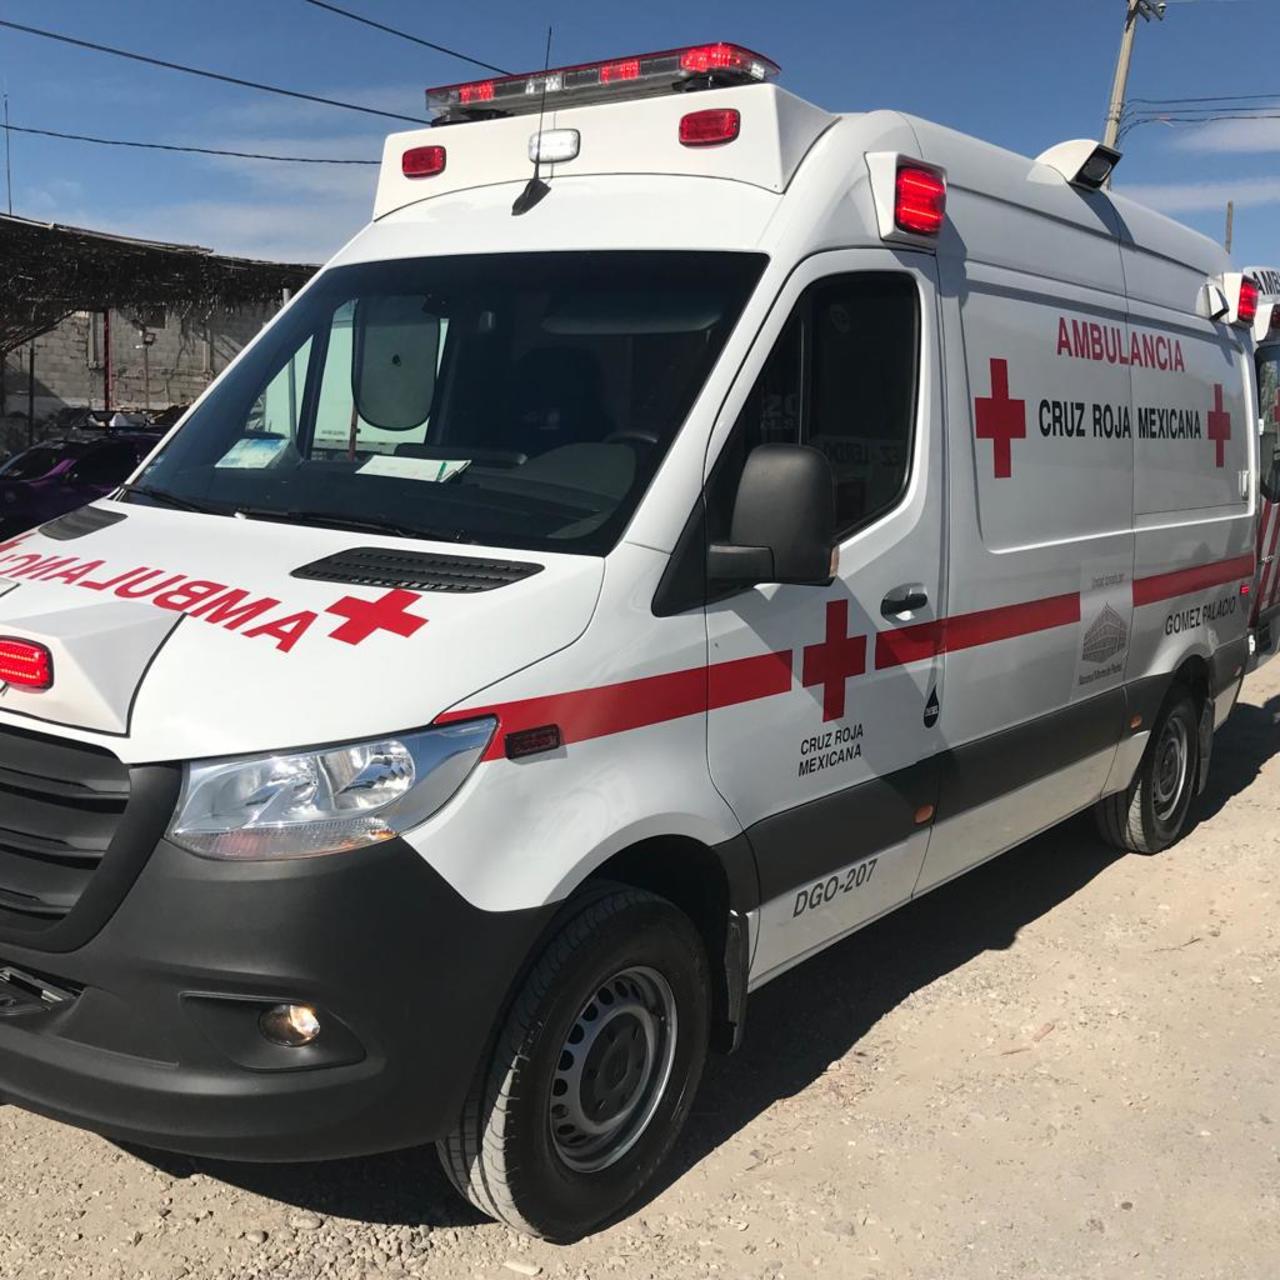 Paramédicos de la Cruz Roja arribaron al lugar para atender al hombre y lo trasladaron a un hospital.